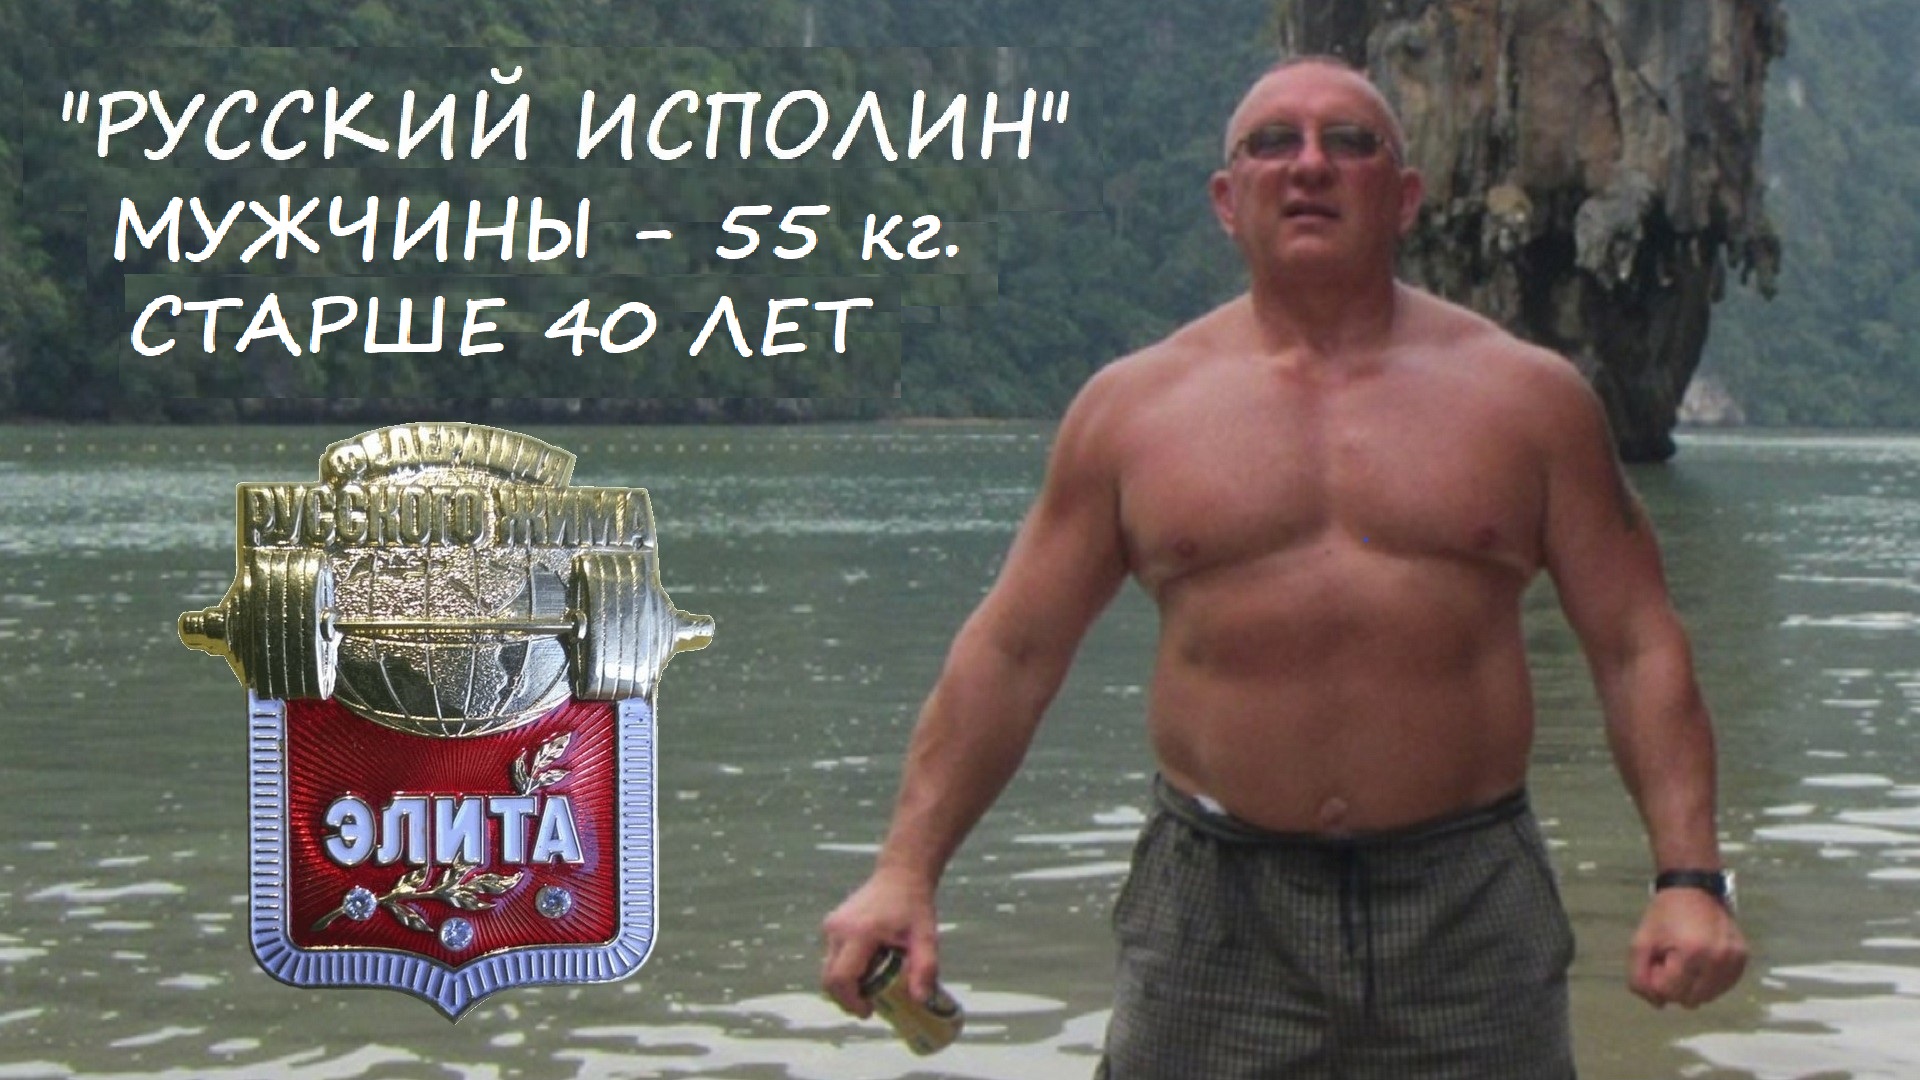 «Мужчины-ветераны 1» (старше 40 лет). Вес штанги 55 кг. Турнир по КРЖ «Русский ИСПОЛИН 2023».